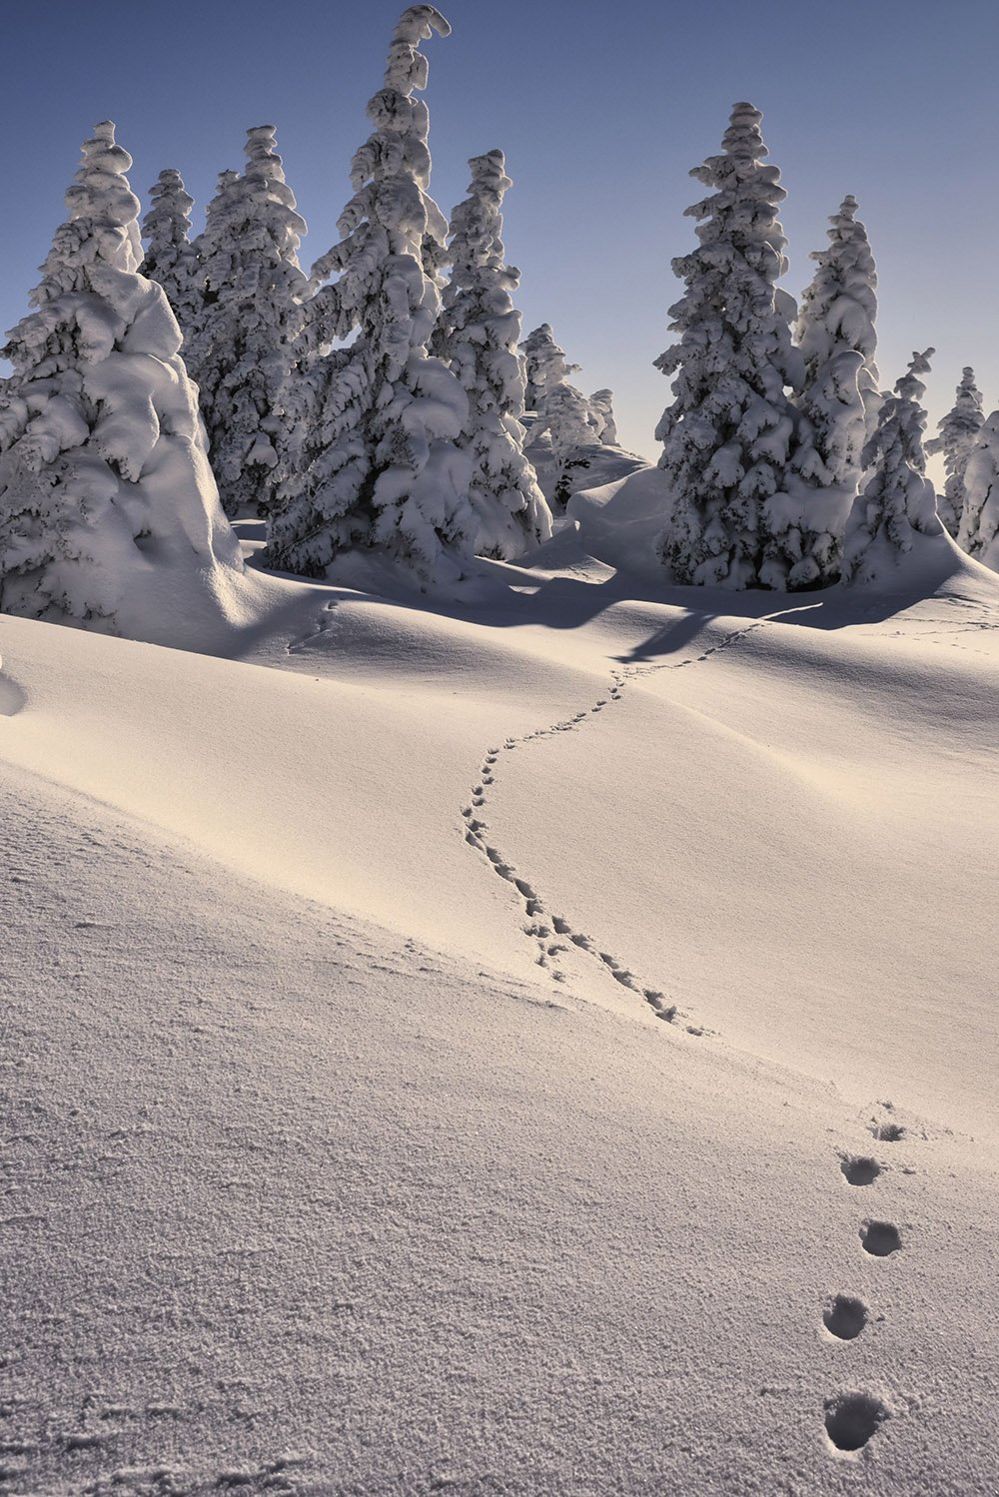 Prints in the snow of Velika Planina in Slovenia